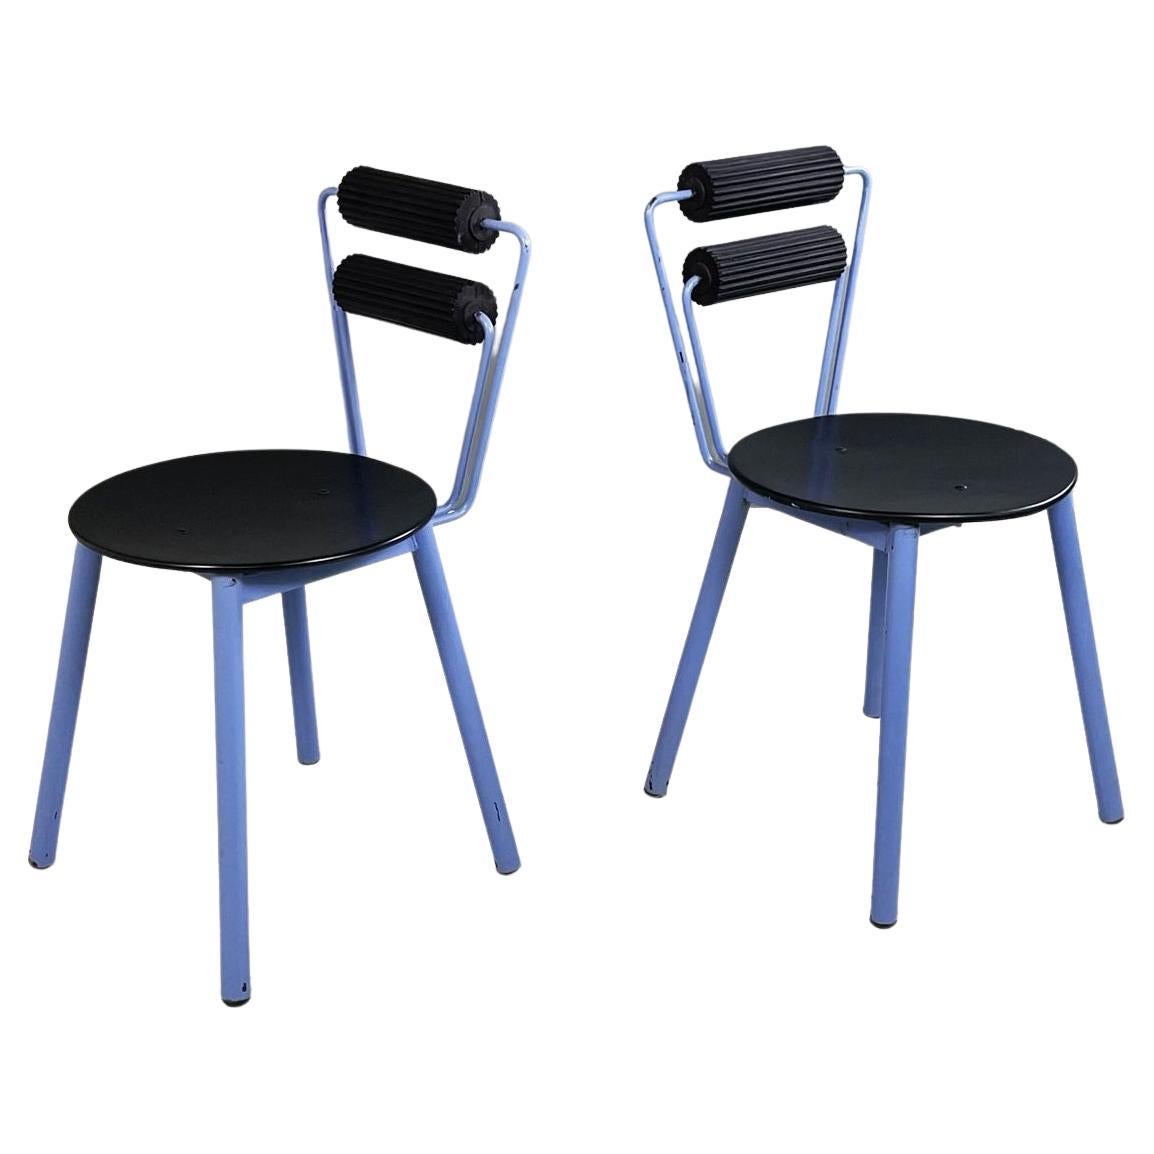 Italienische moderne Stühle aus blauem Metall, schwarzem Holz und schwarzem Gummi, 1980er Jahre